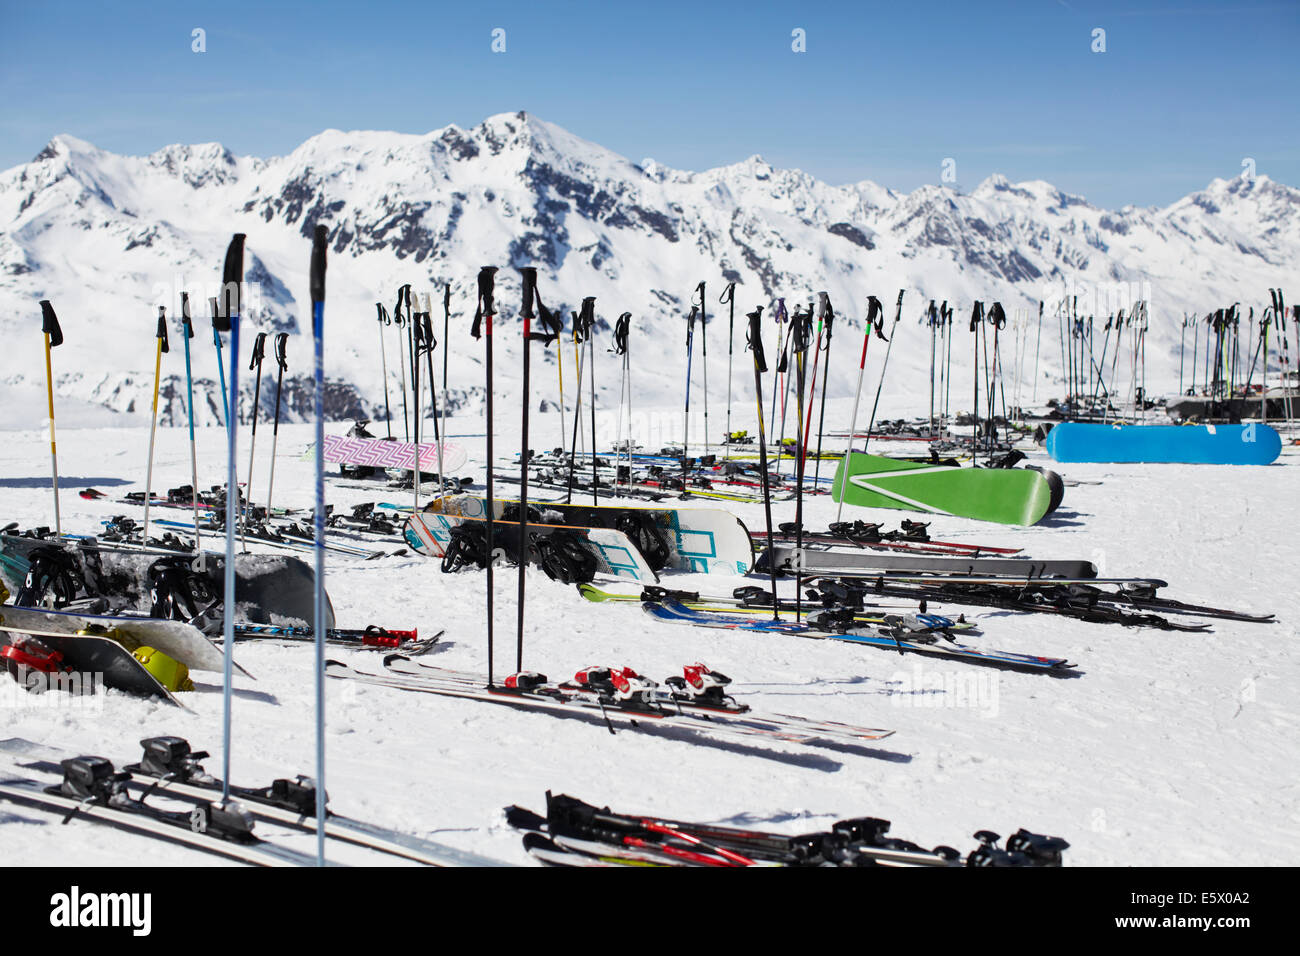 Rows of ski poles, skis and snowboards, Austria Stock Photo